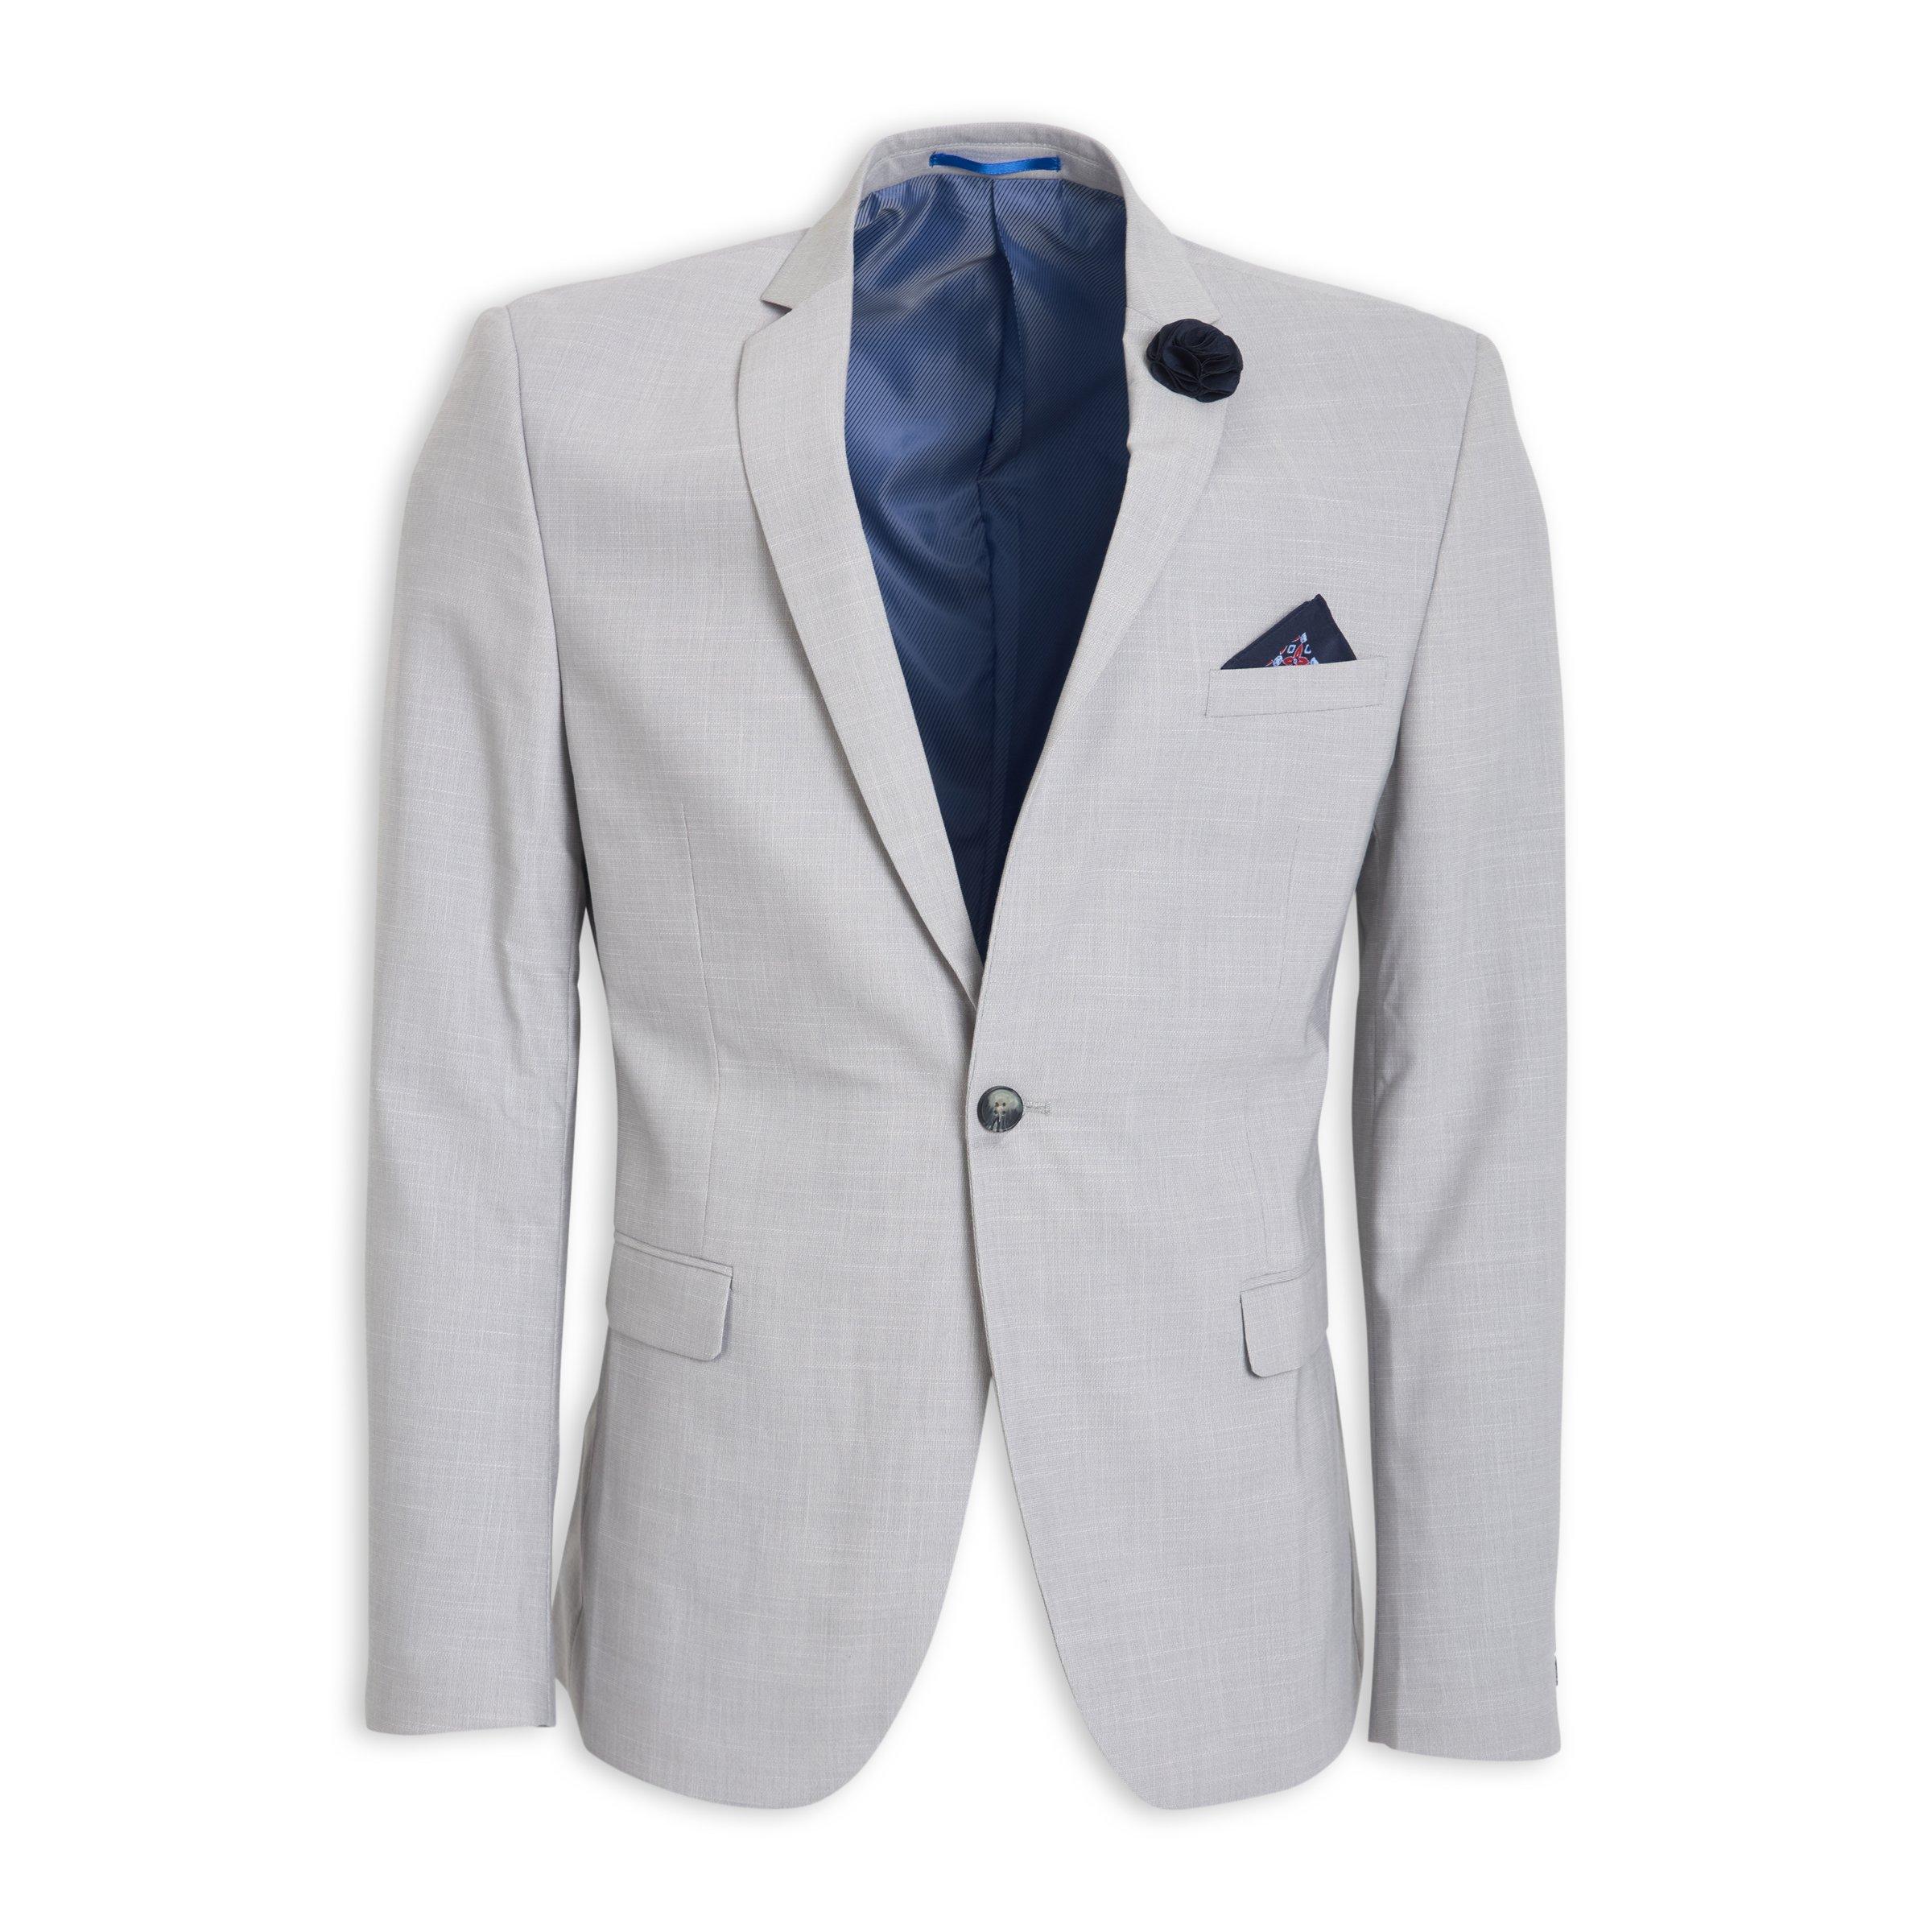 Buy Truworths Man Grey Co-Ord Jacket Online | Truworths